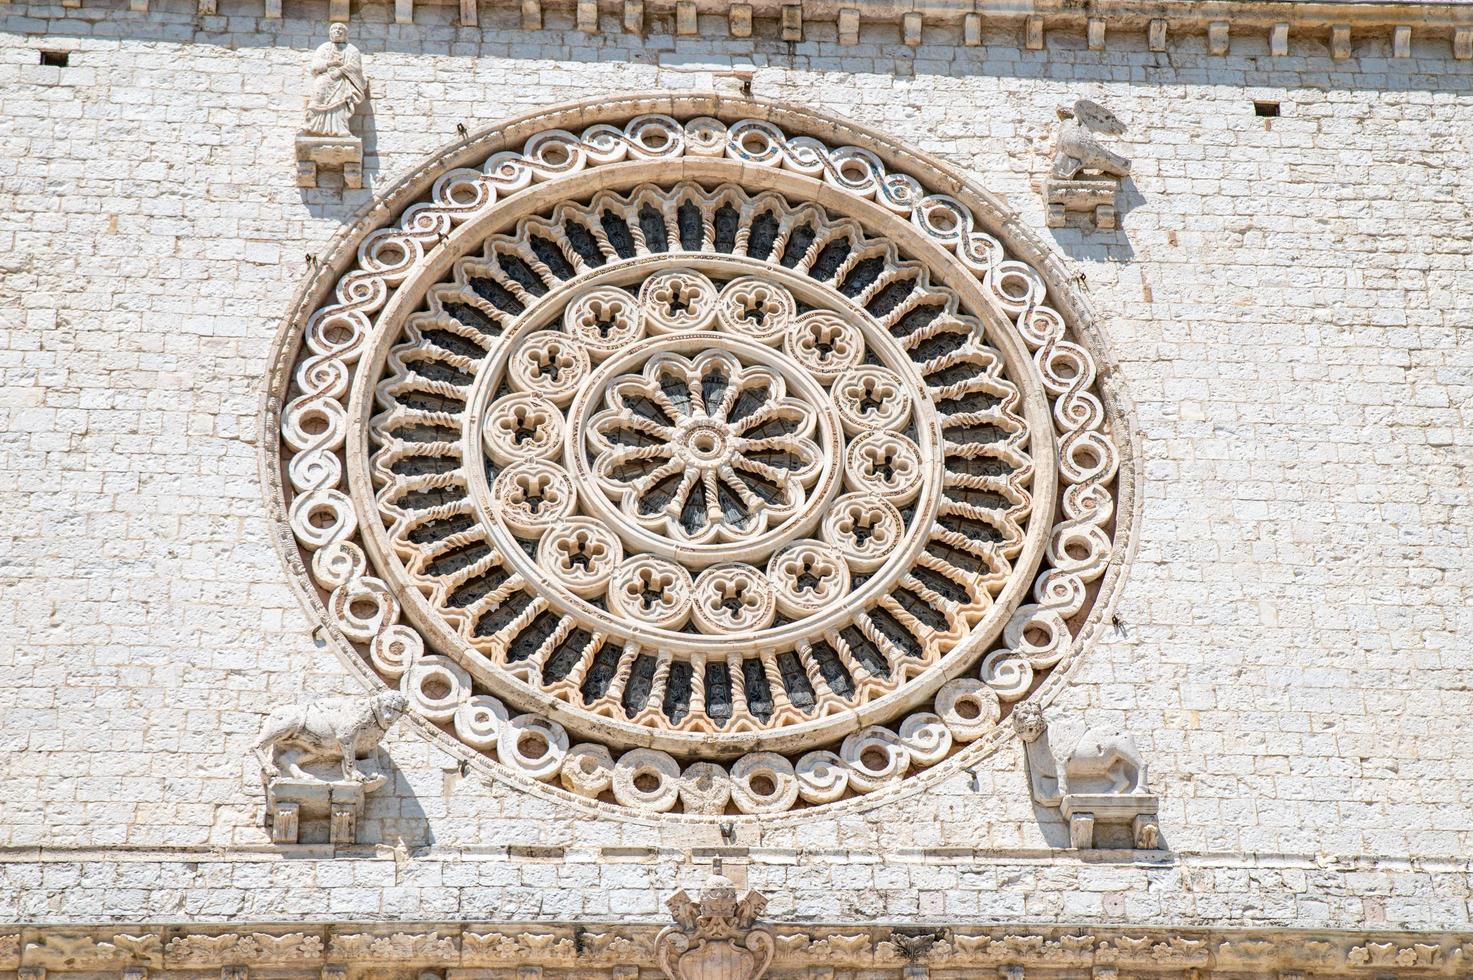 detalhe da basílica de santa chiara foto